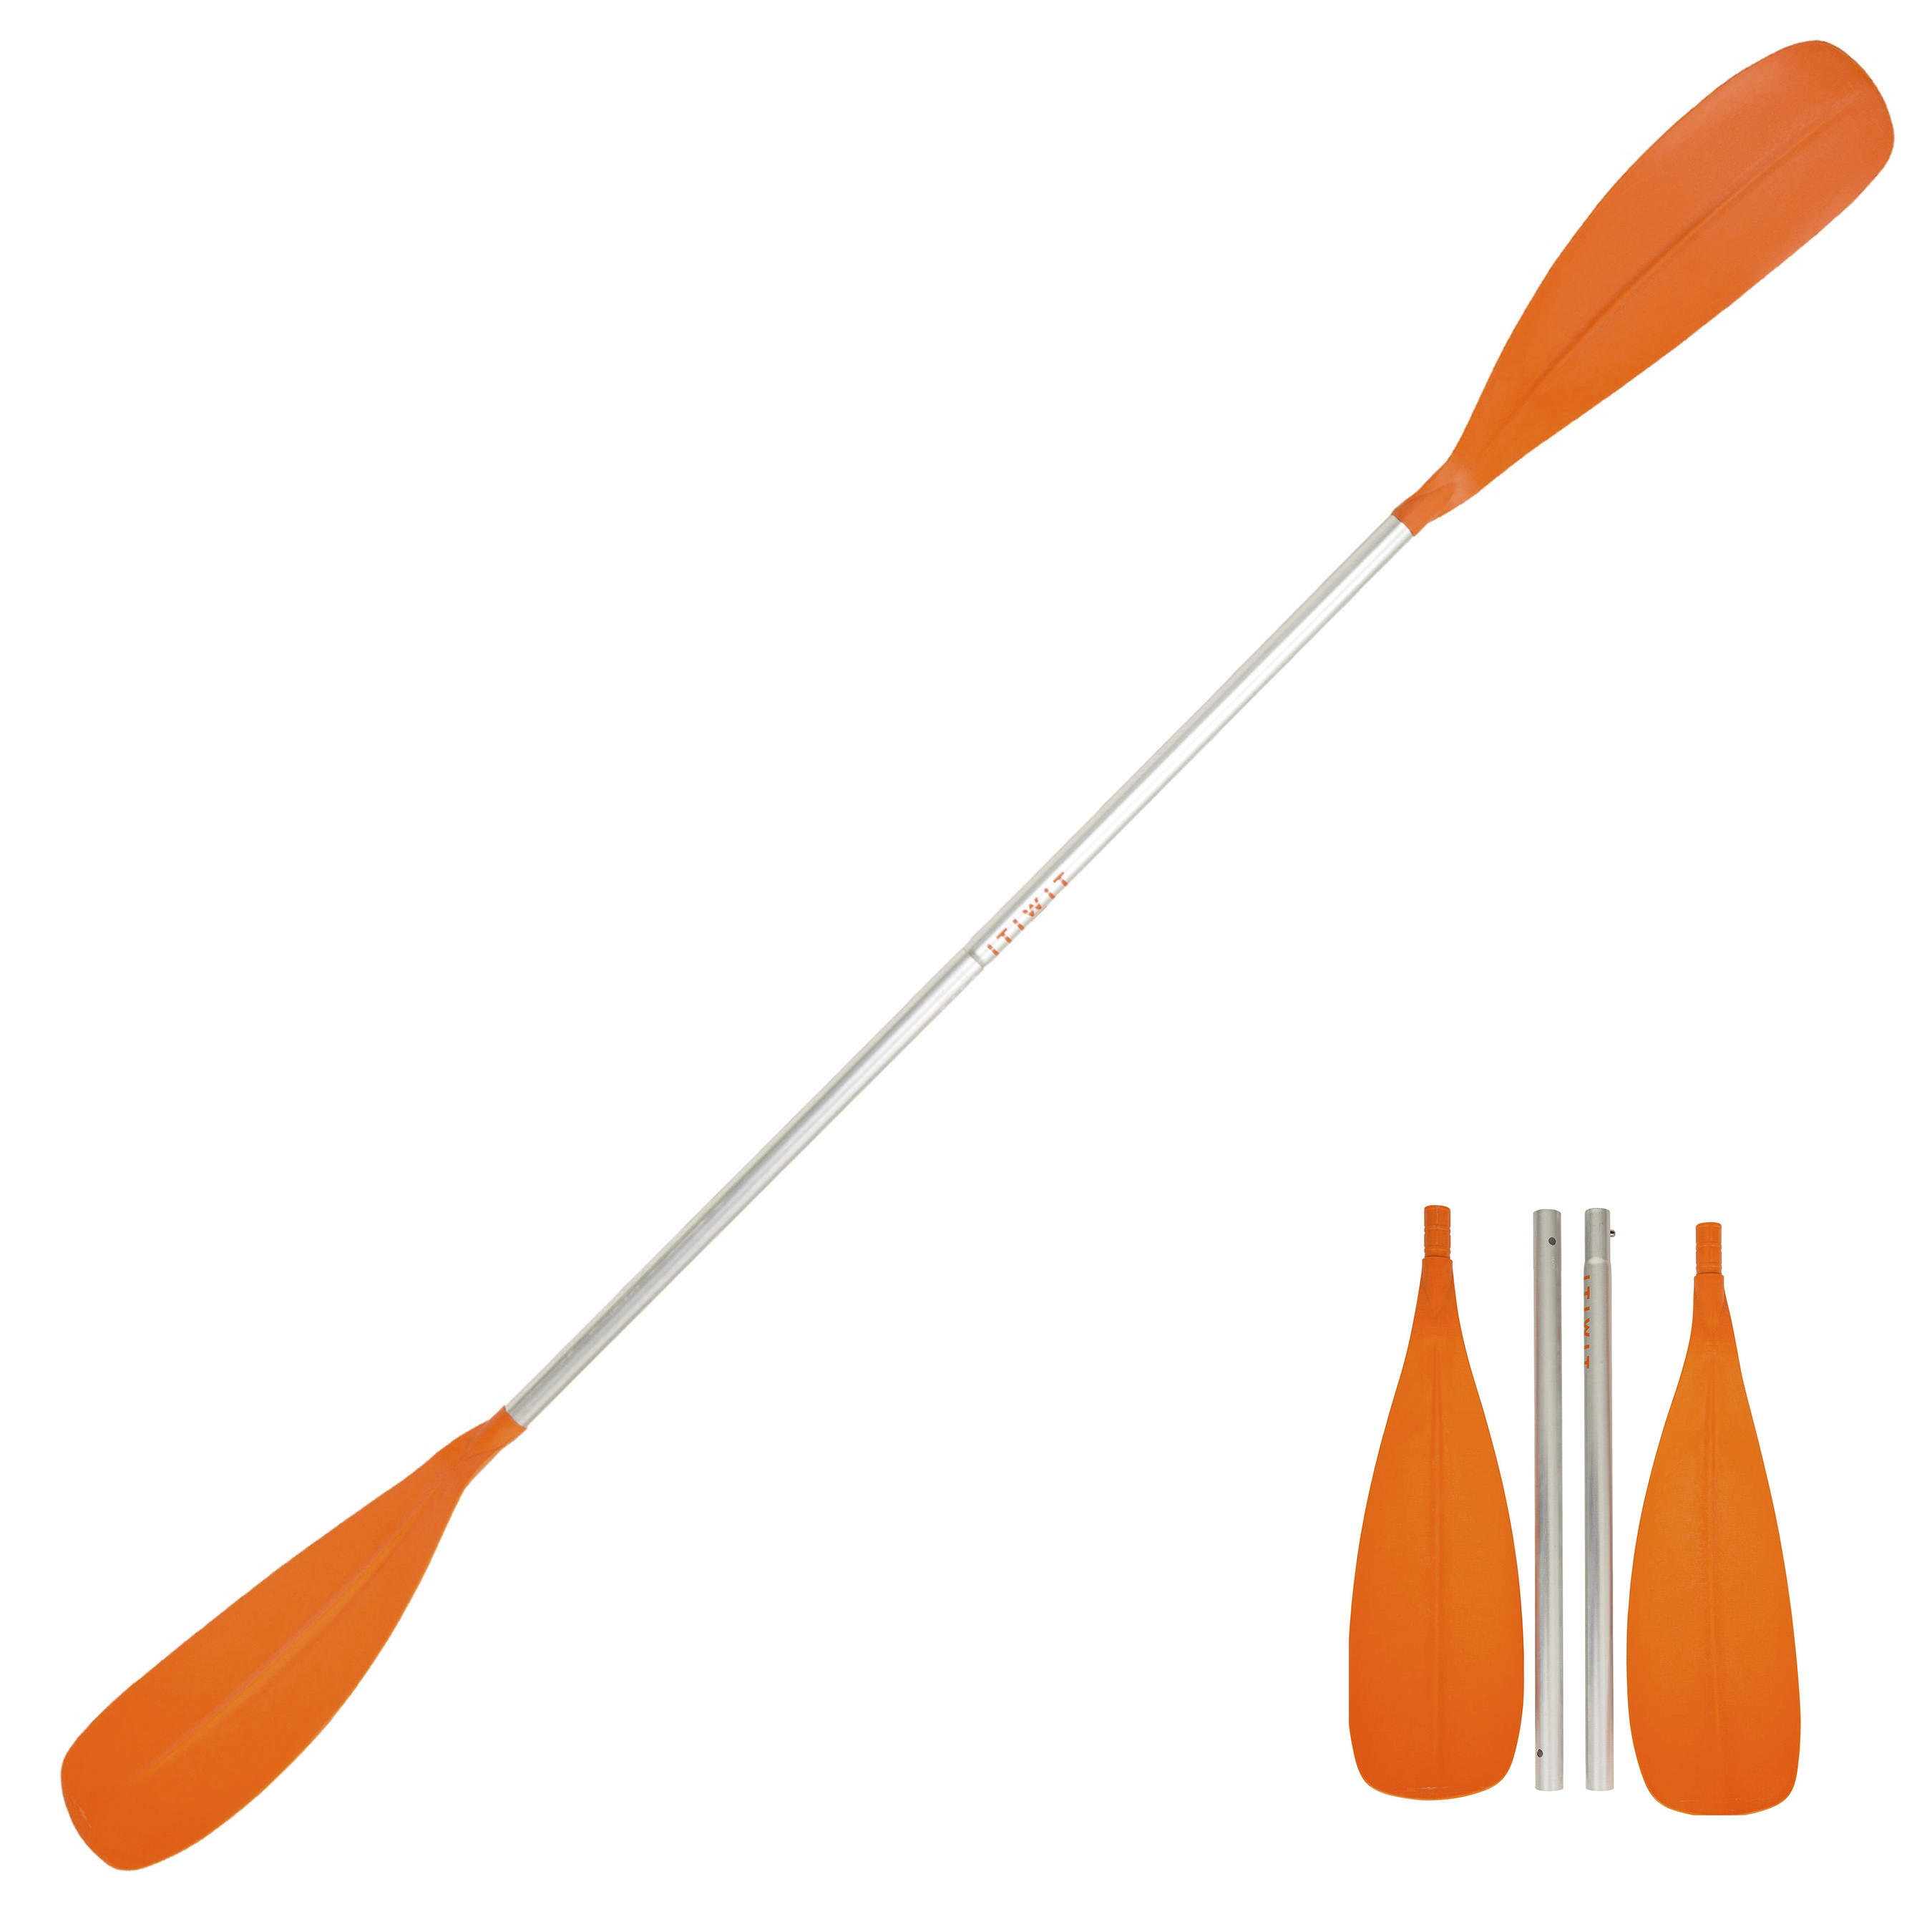 Adjustable Kayak Paddle - Orange - ITIWIT